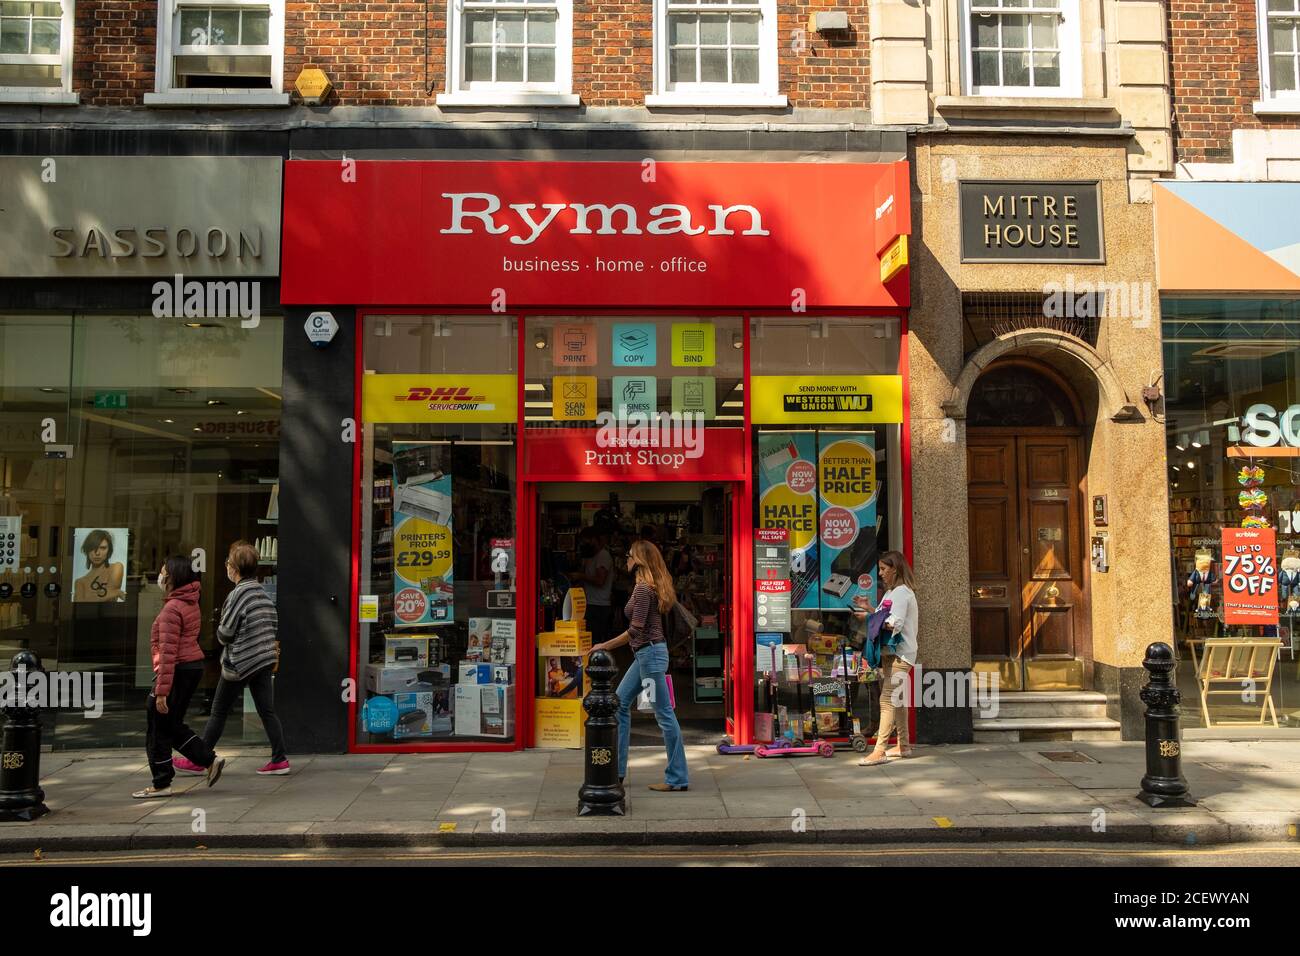 Londres- Ryman, una compañía británica de venta al por menor Foto de stock